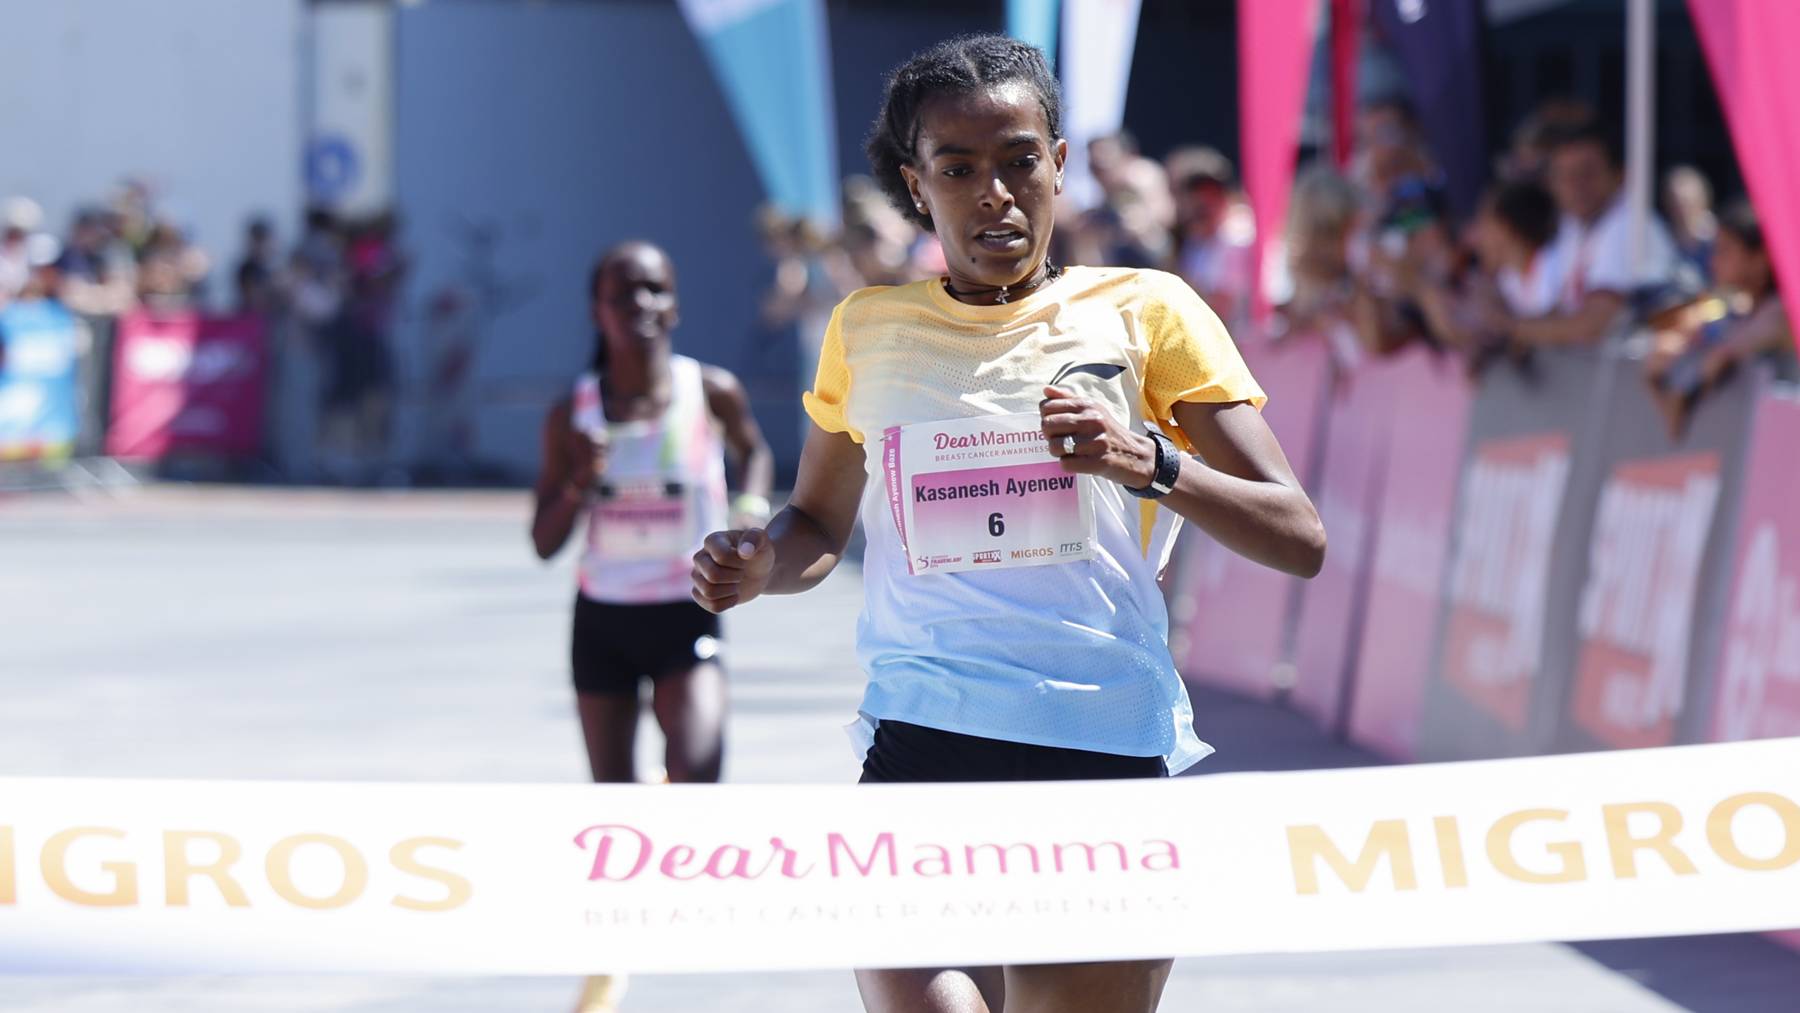 Die Äthiopierin Ayenew Kasanesh entscheidet den diesjährigen Frauenlauf für sich.